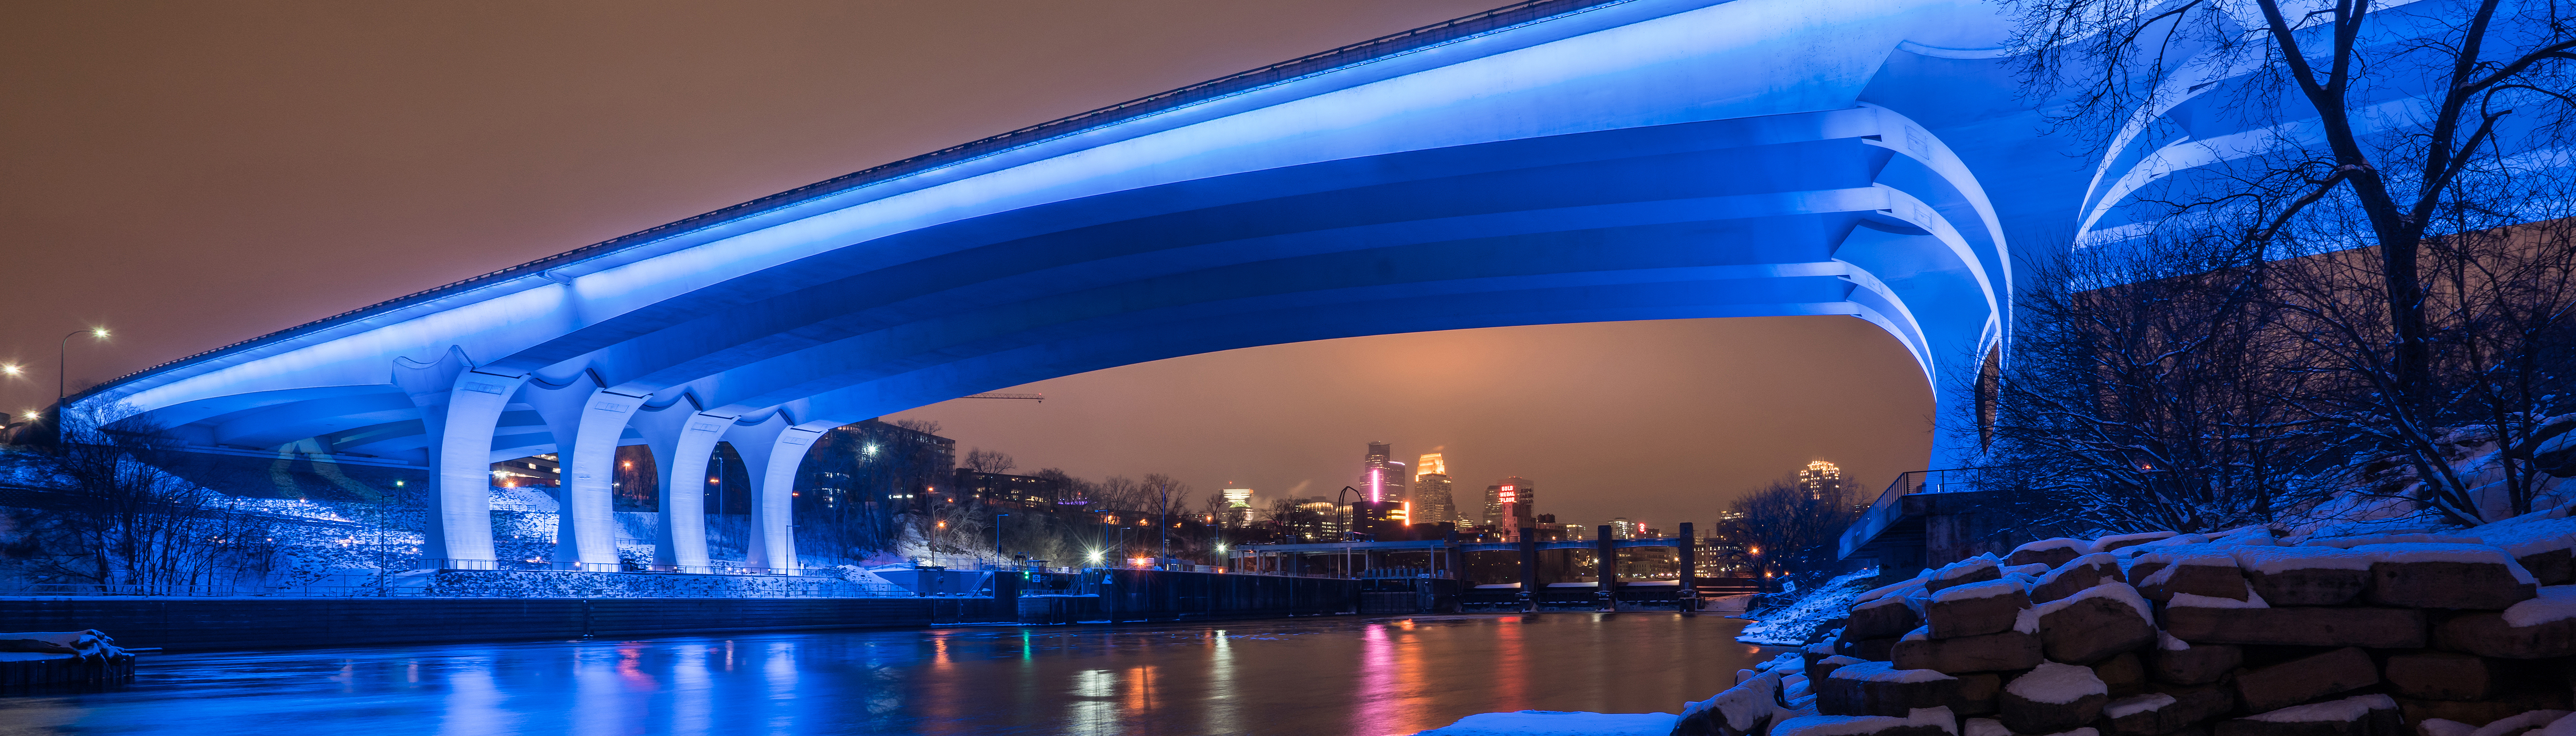 I-35W St. Anthony Falls Bridge lit blue